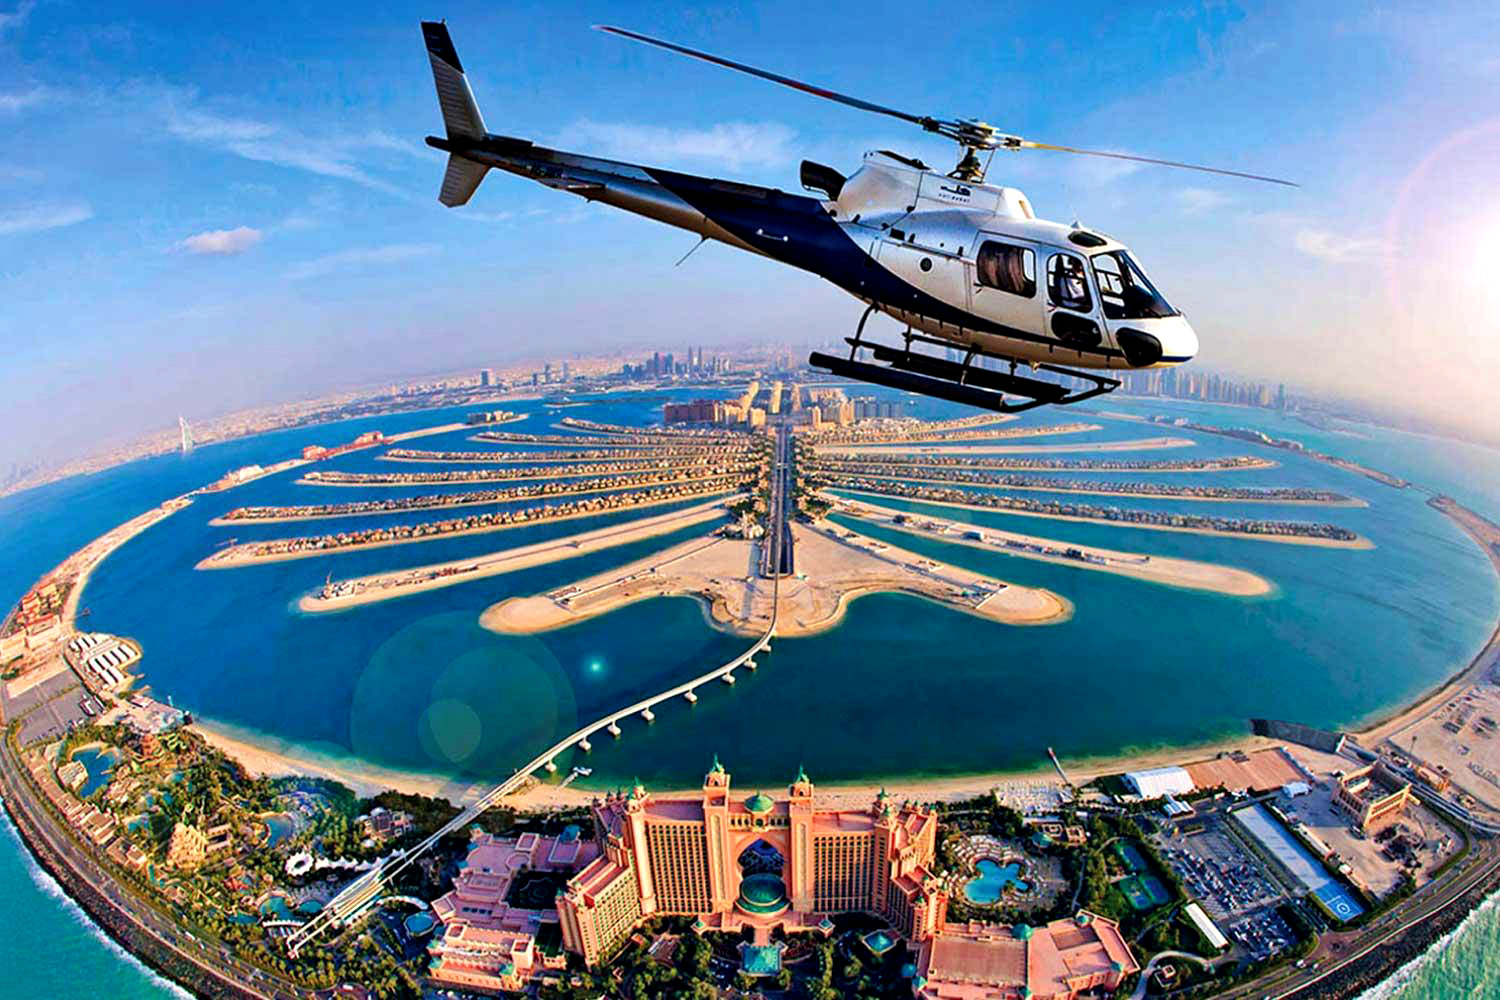 Пролетите над достопримечательностями Дубая на вертолёте